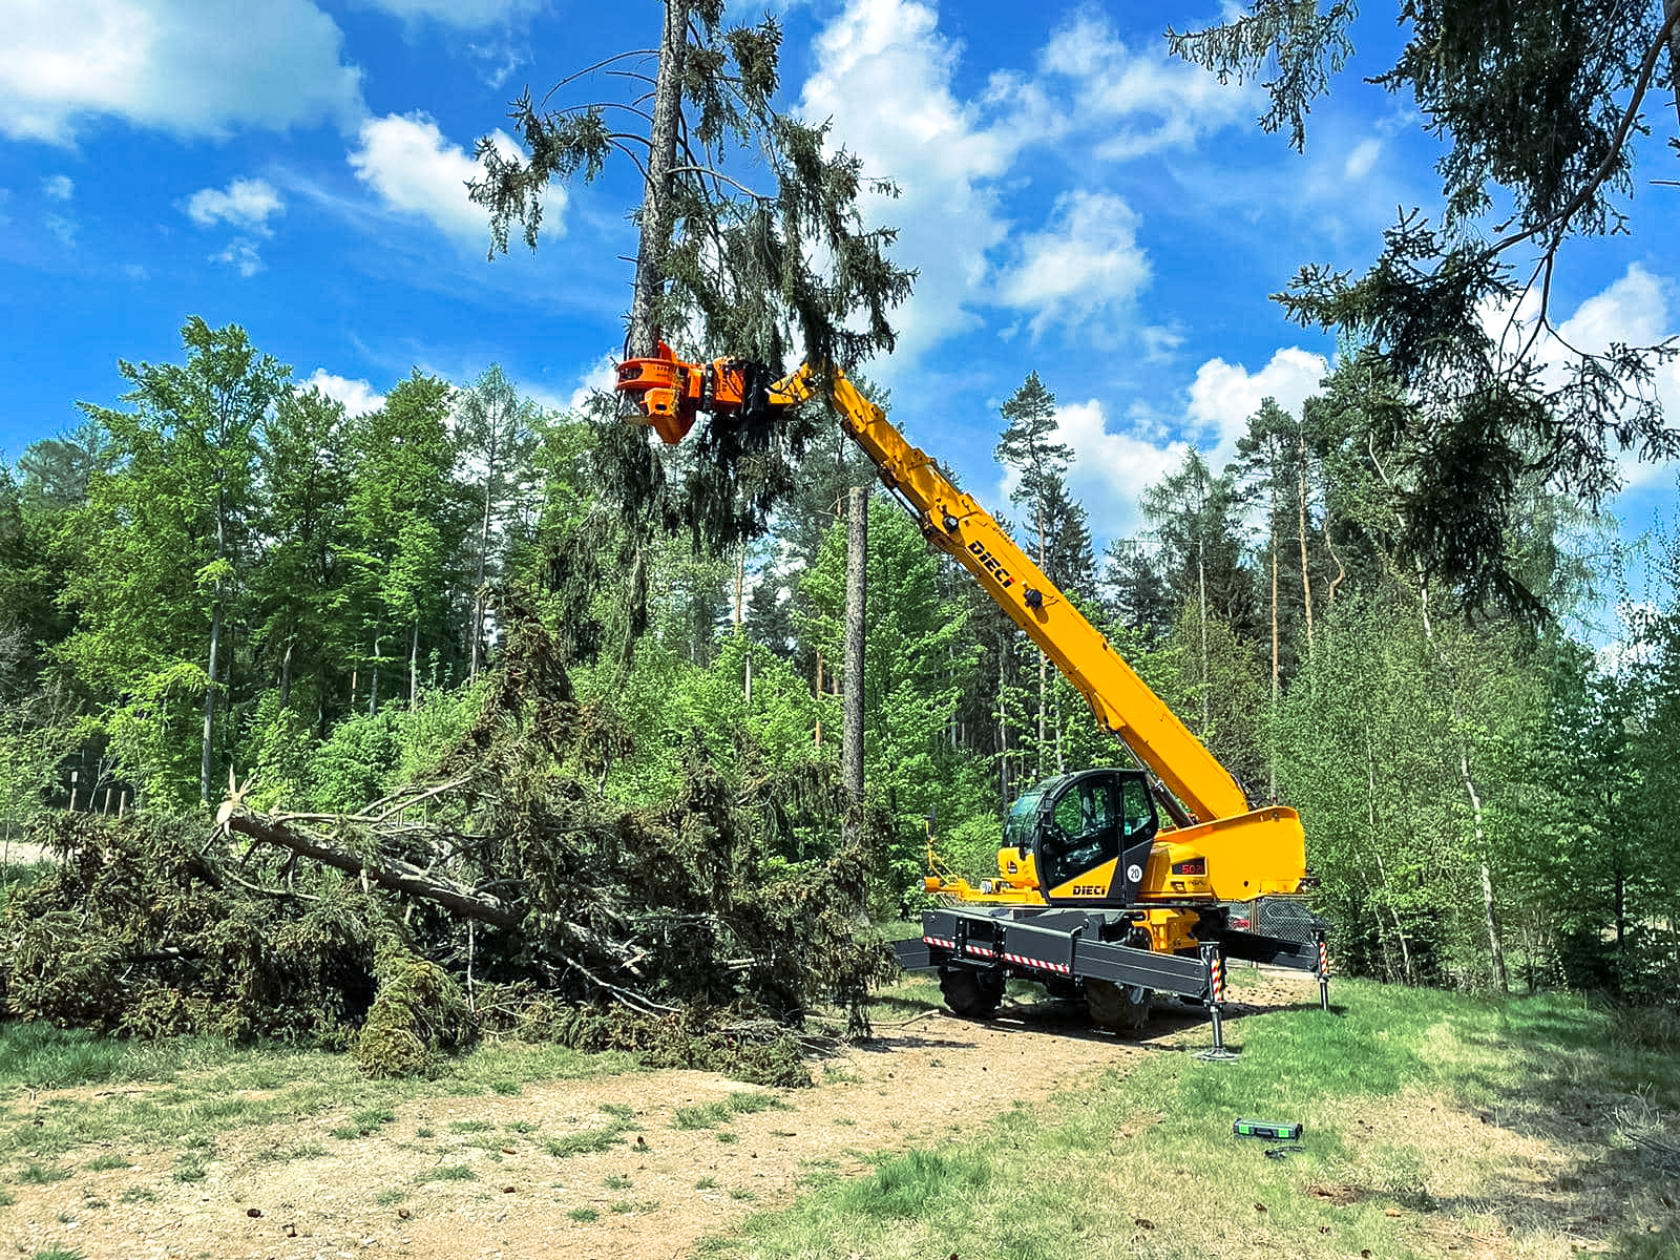 Telehandler for forest maintenance